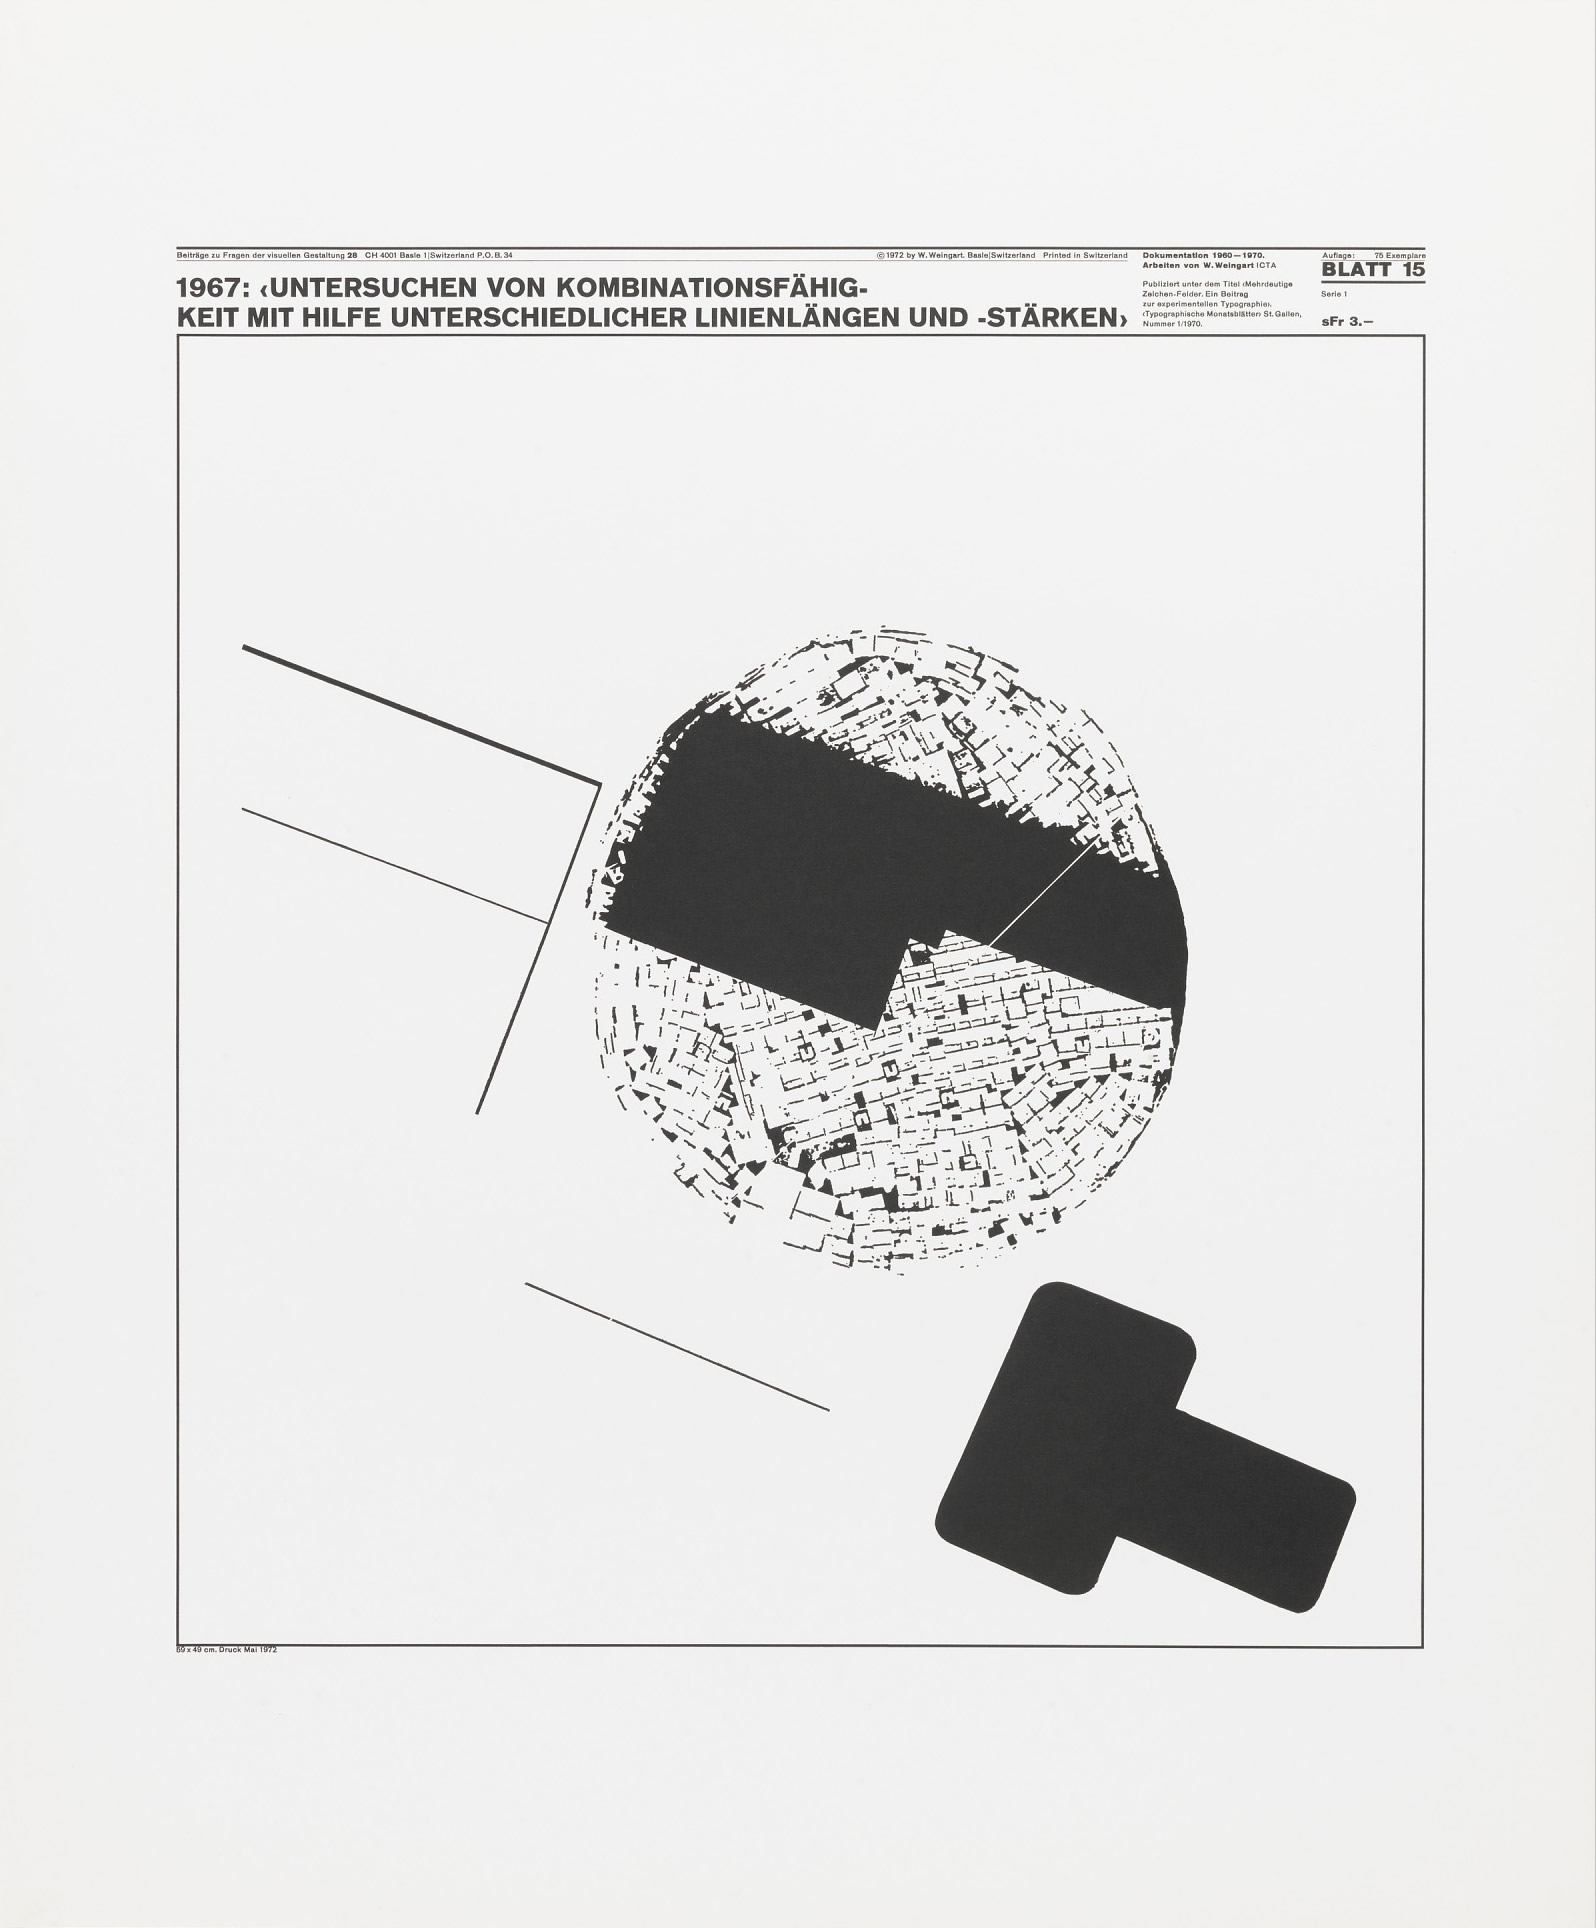 Wolfgang Weingart: Beiträge zu Fragen der visuellen Gestaltung 28, Blatt 15 from the portfolio Dokumentation 1960—1970, Arbeiten von W. Weingart, Designed 1967. Lithograph. (58.74 x 48.9 cm)